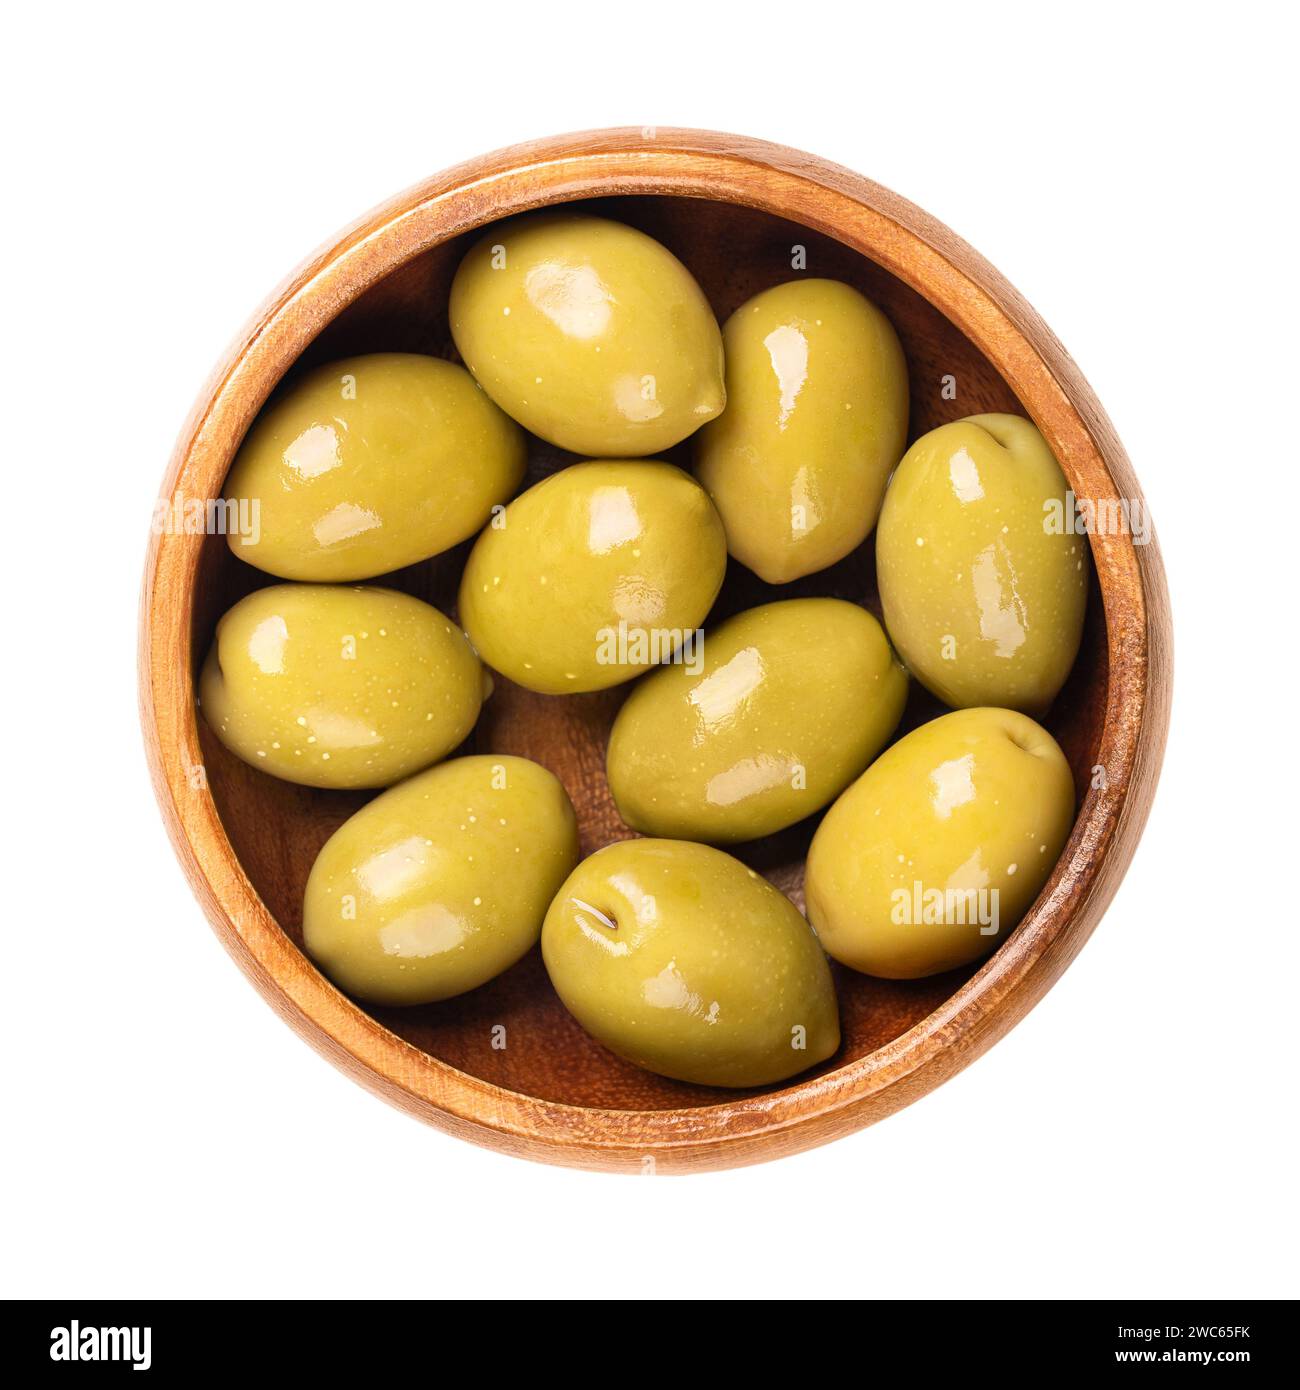 Olives vertes à fosse, marinées entières, grandes olives de table grecques, dans un bol en bois. Fruits entiers, cueillis quand ils ne sont pas encore mûrs et de goût amer. Banque D'Images